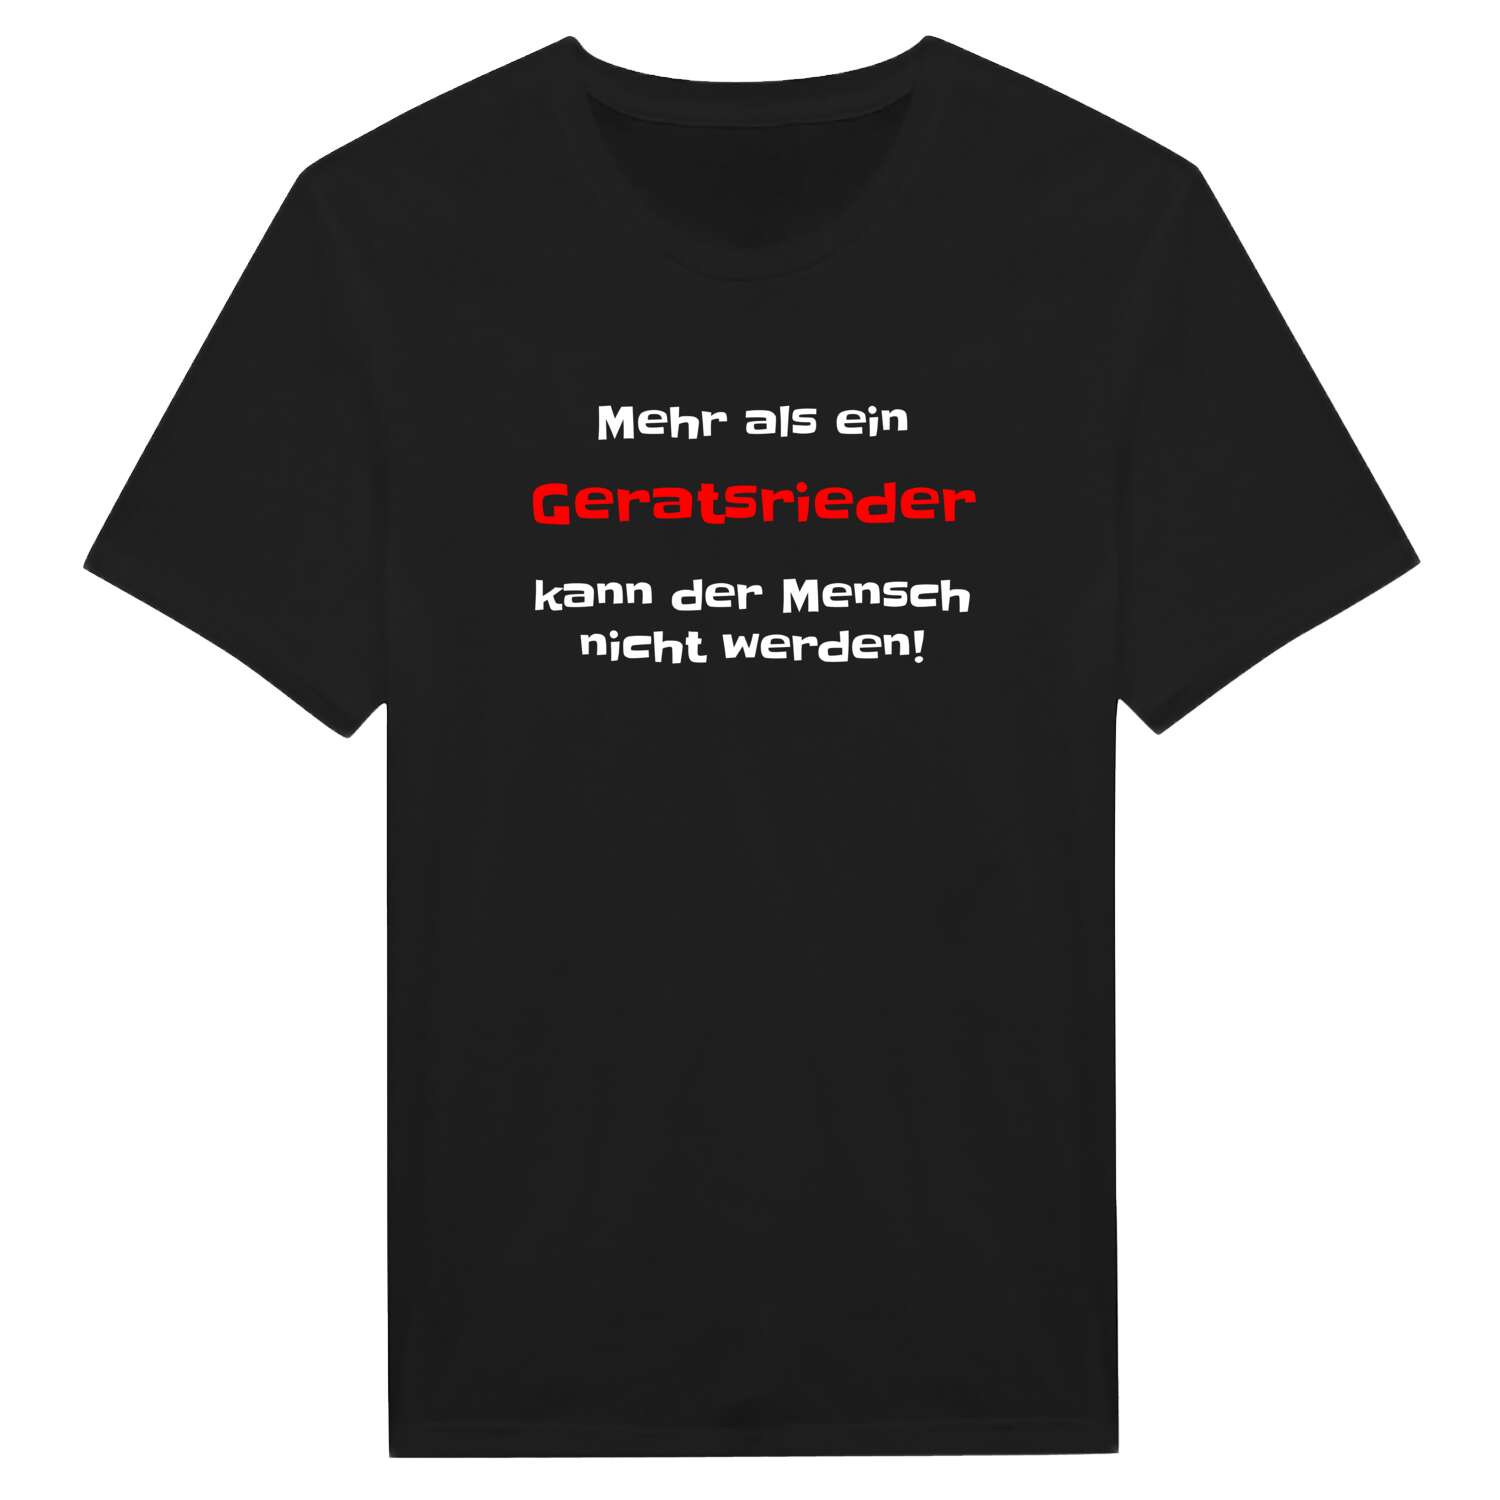 Geratsried T-Shirt »Mehr als ein«